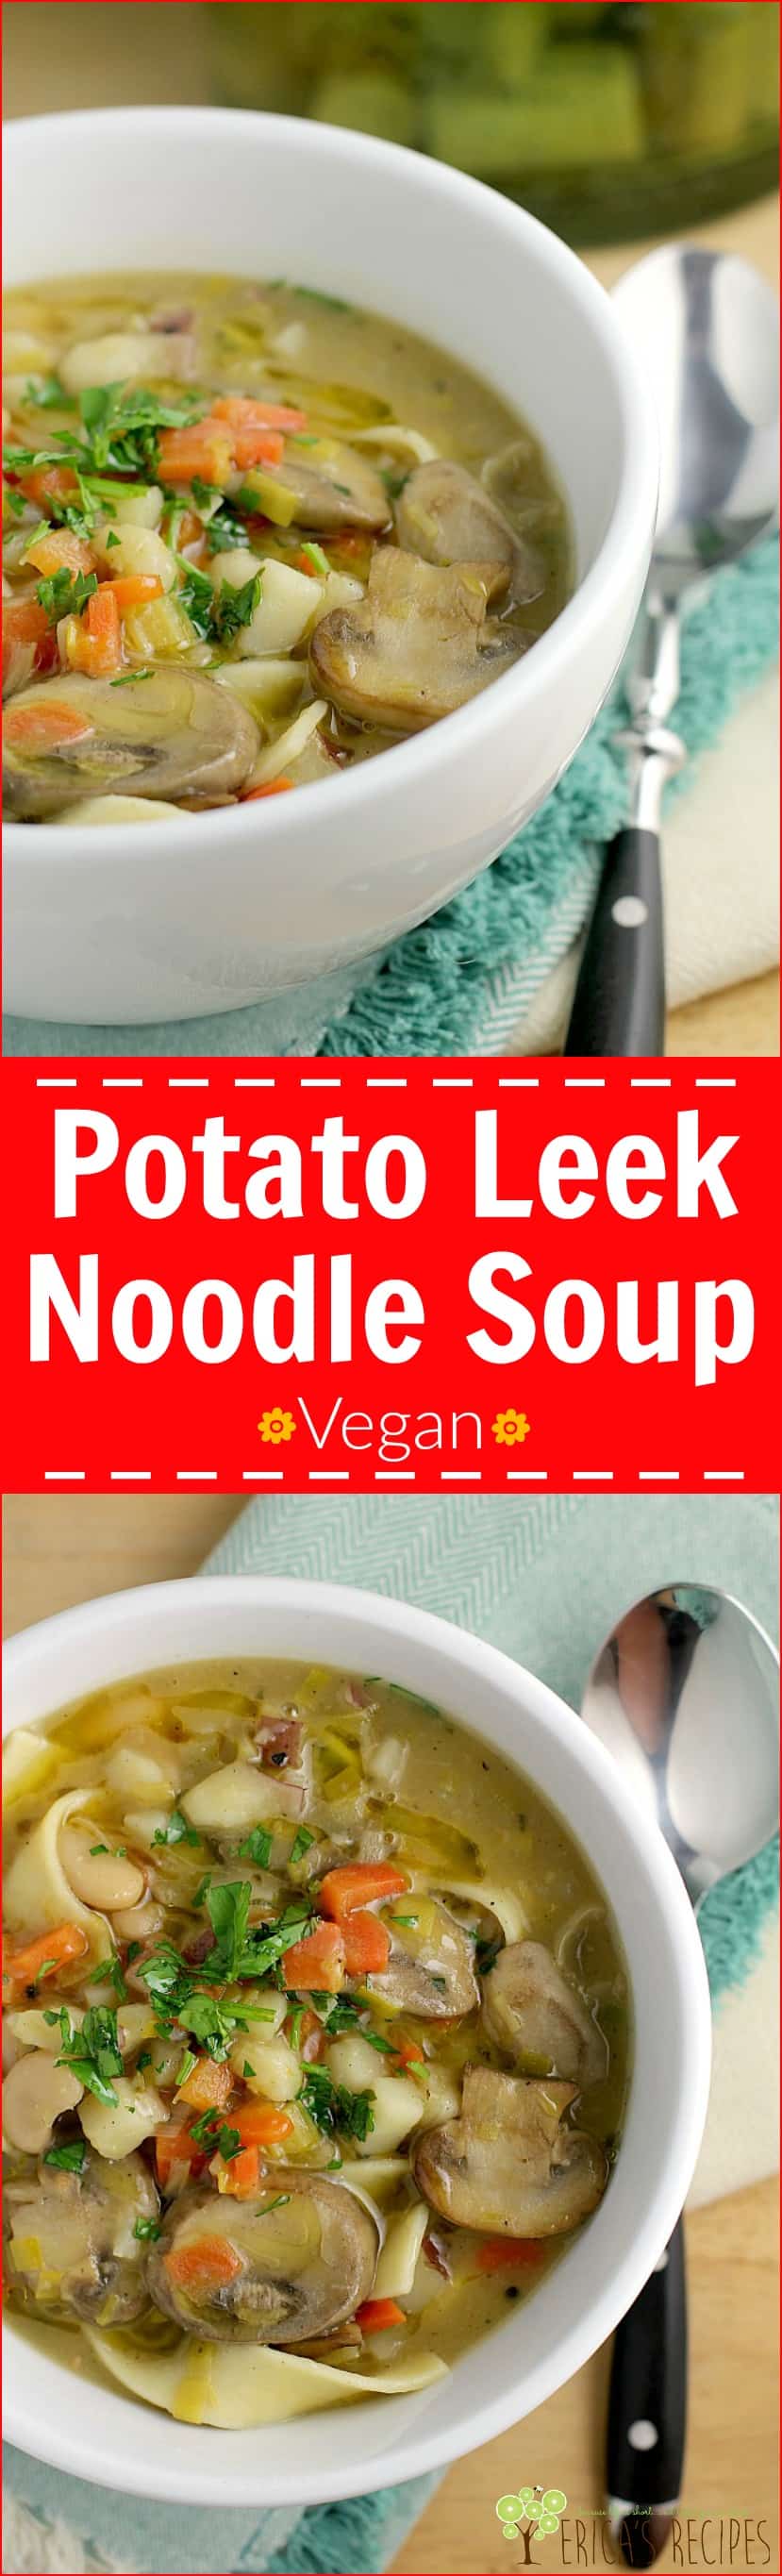 Potato Leek Noodle Soup http://wp.me/p4qC4h-3xt